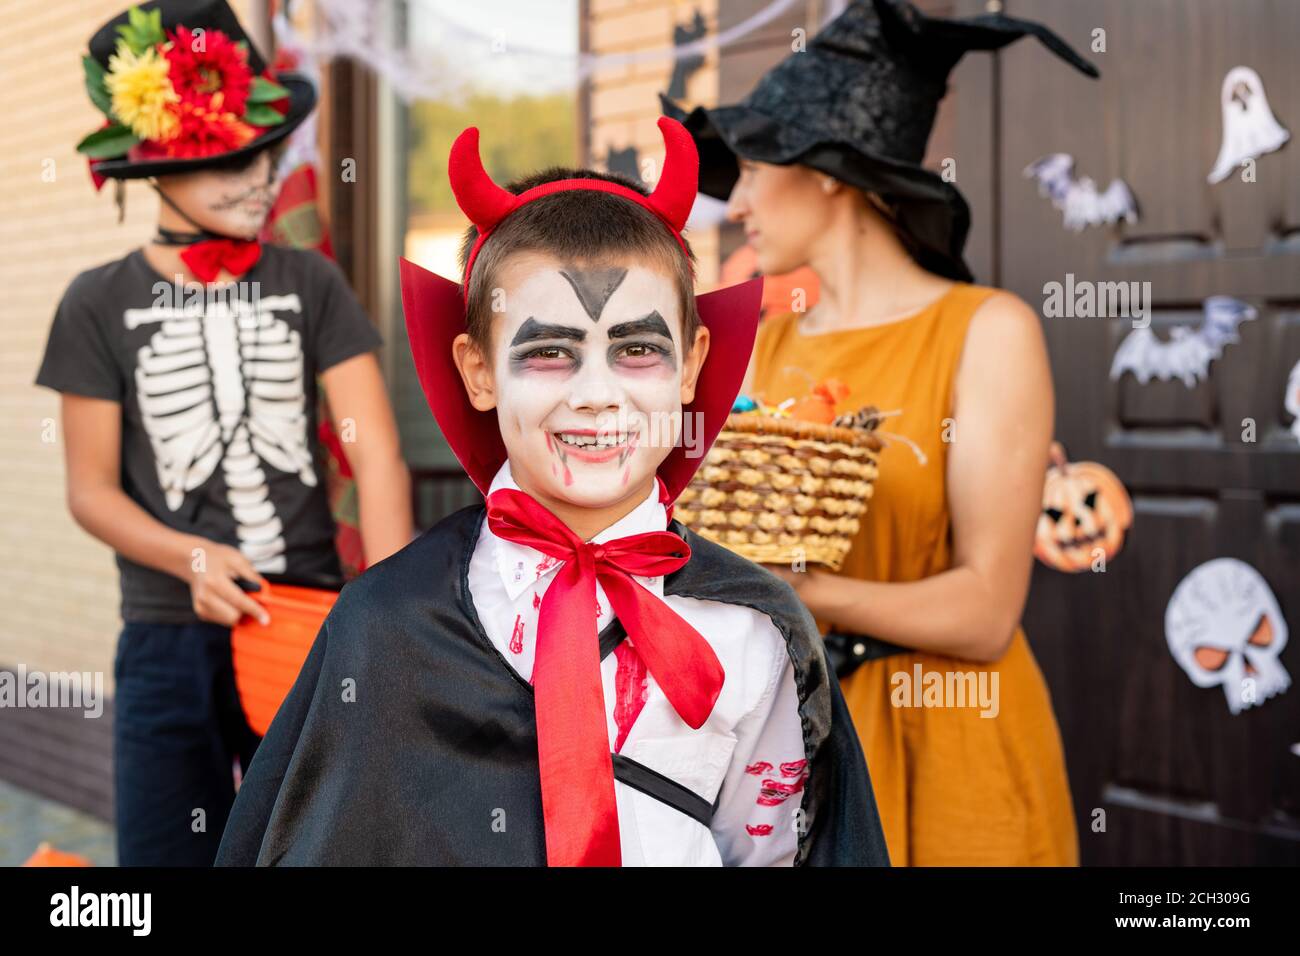 Garçon joyeux en costume d'halloween vous regardant contre les jeunes femme et ami Banque D'Images